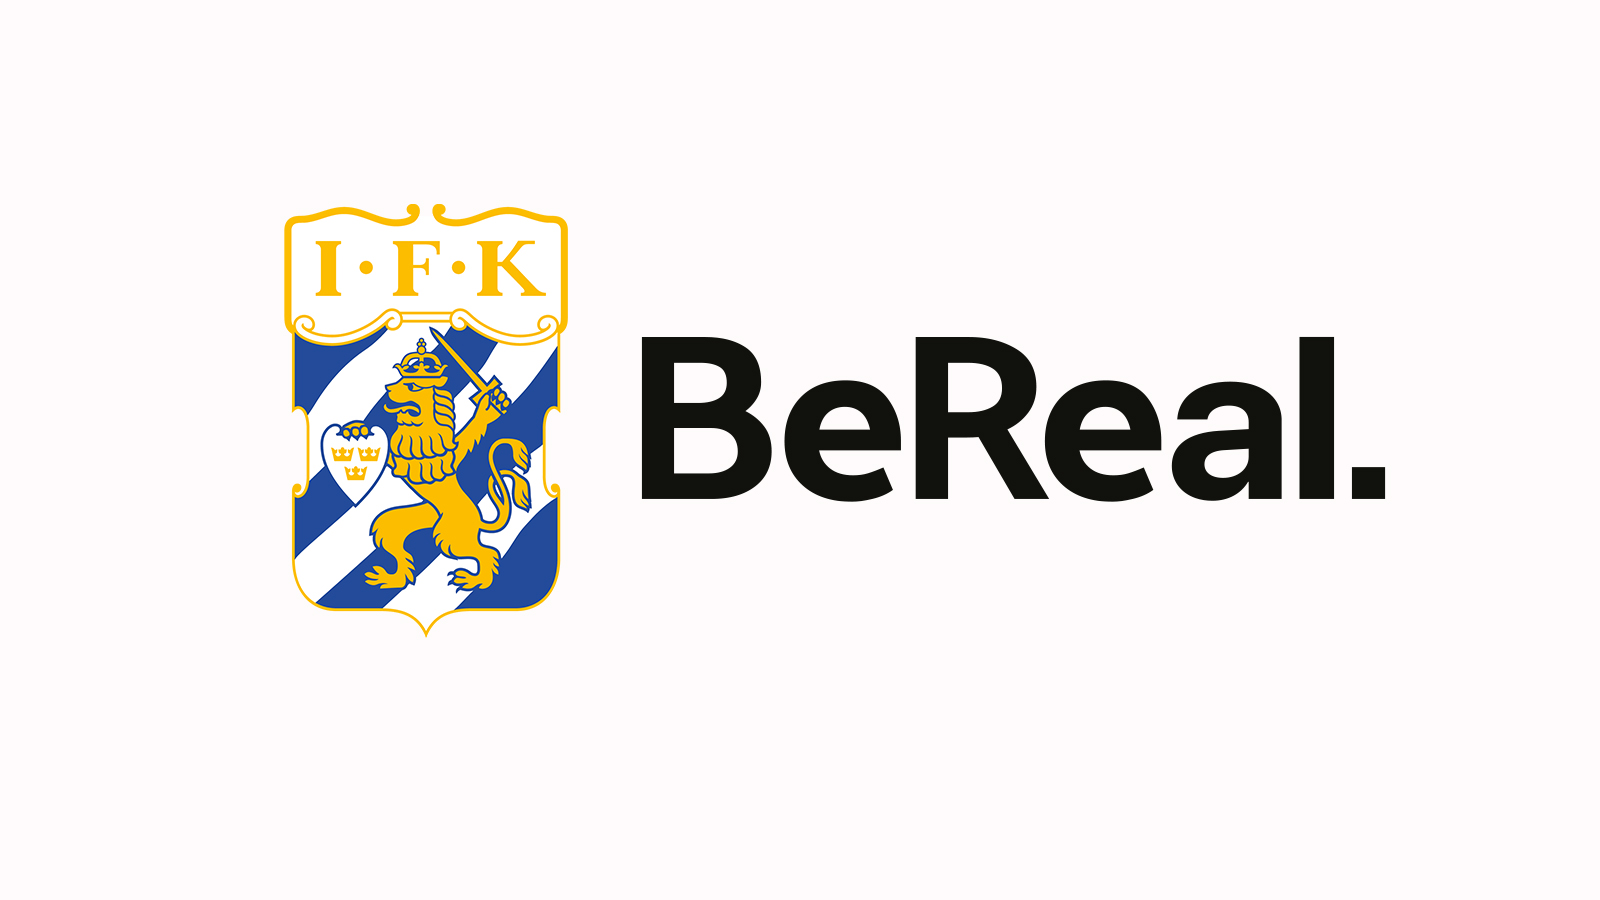 IFK Göteborg första svenska klubb på BeReal